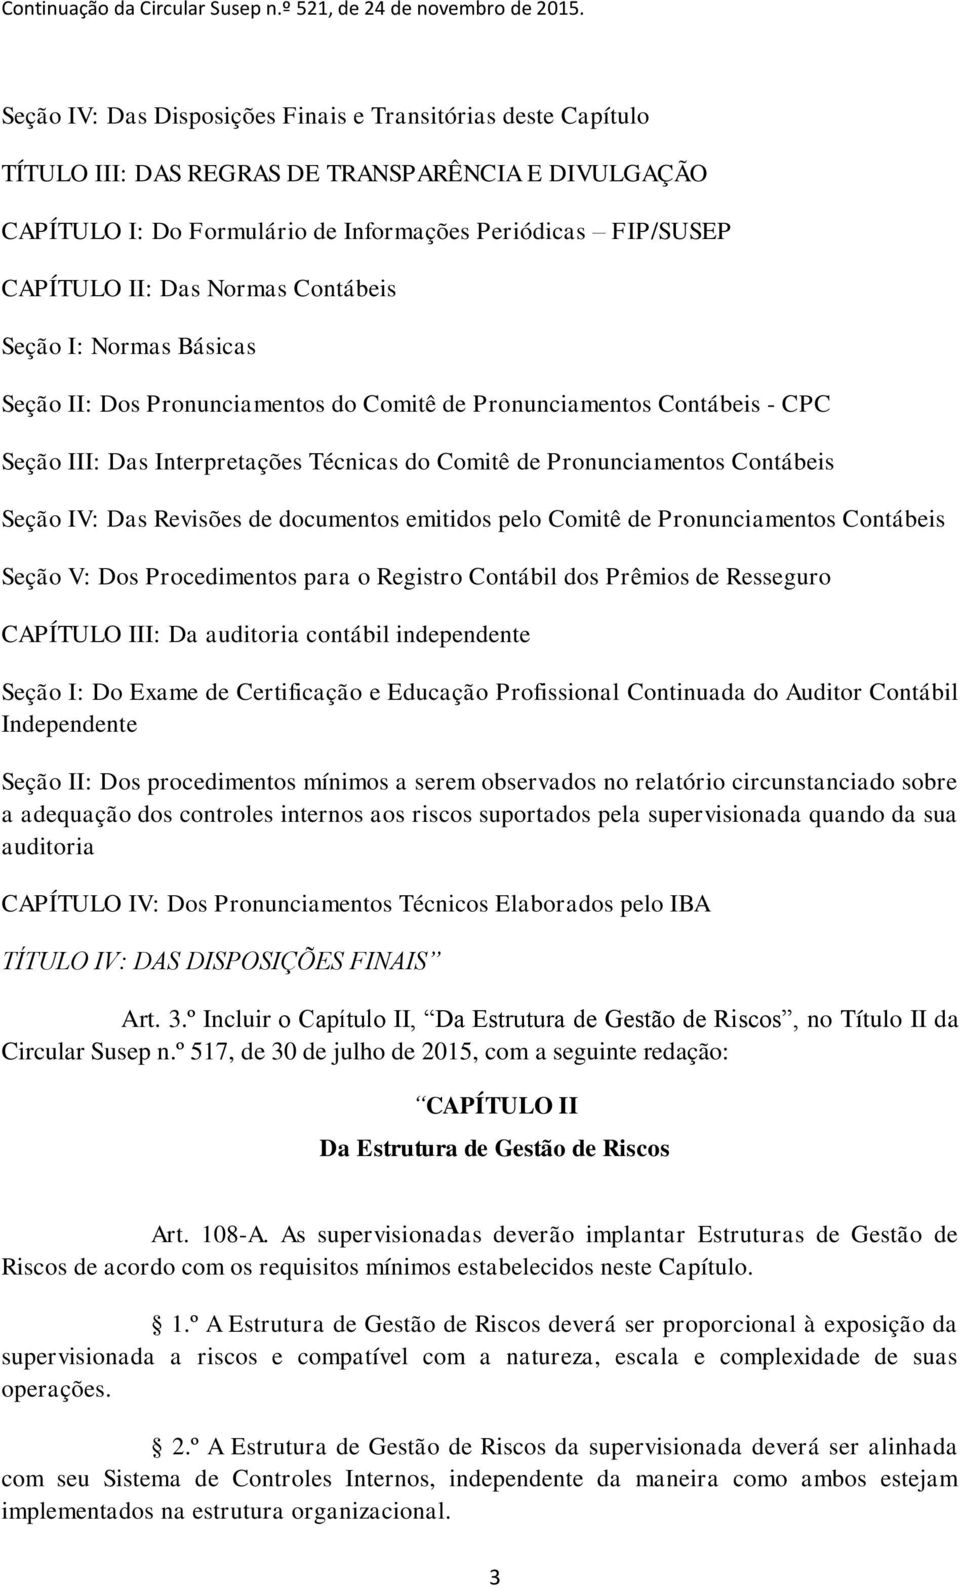 IV: Das Revisões de documentos emitidos pelo Comitê de Pronunciamentos Contábeis Seção V: Dos Procedimentos para o Registro Contábil dos Prêmios de Resseguro CAPÍTULO III: Da auditoria contábil